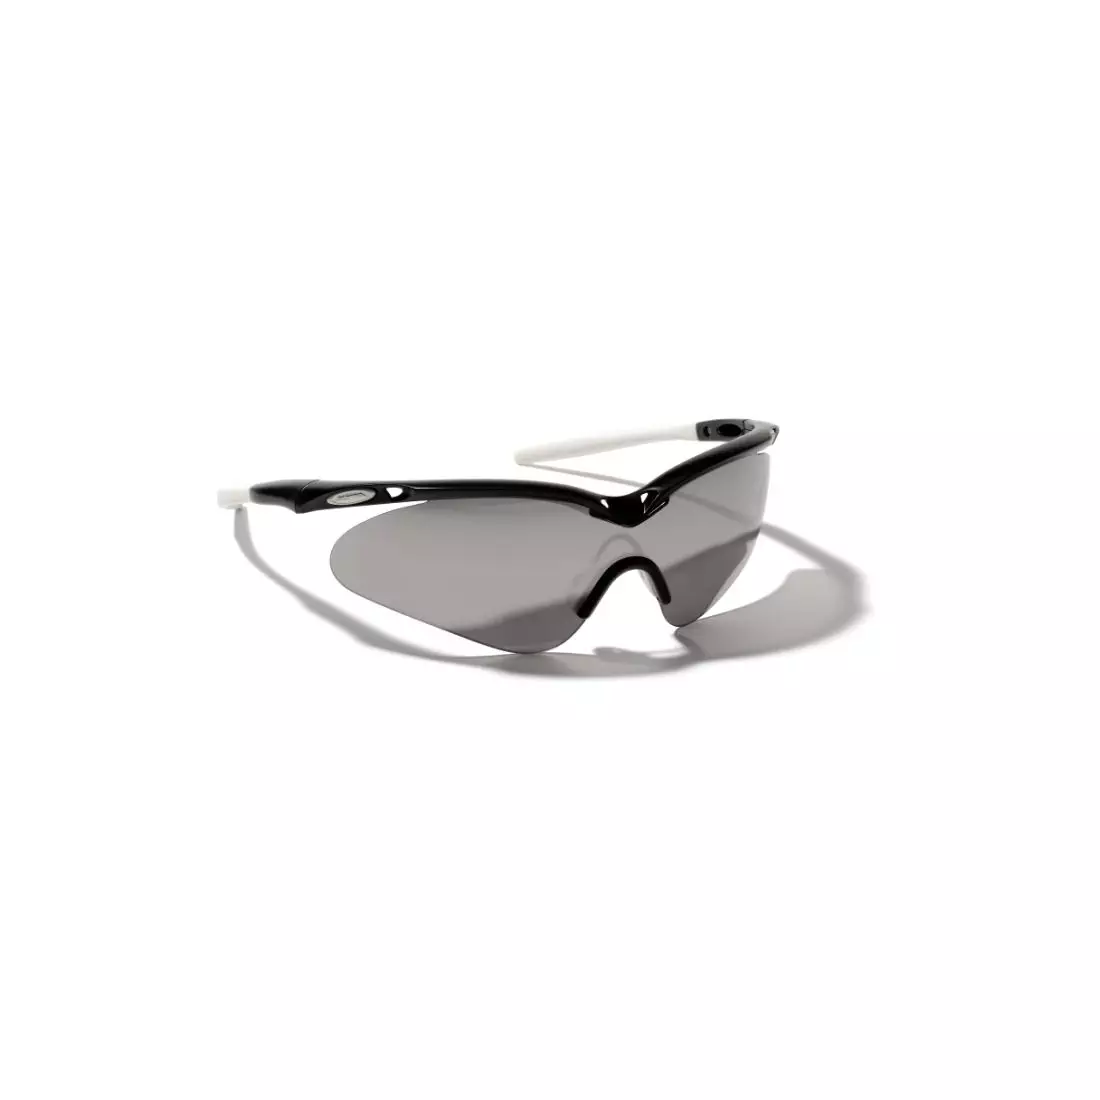 ALPINA GUARD-SHIELD sports glasses - color: Black and white